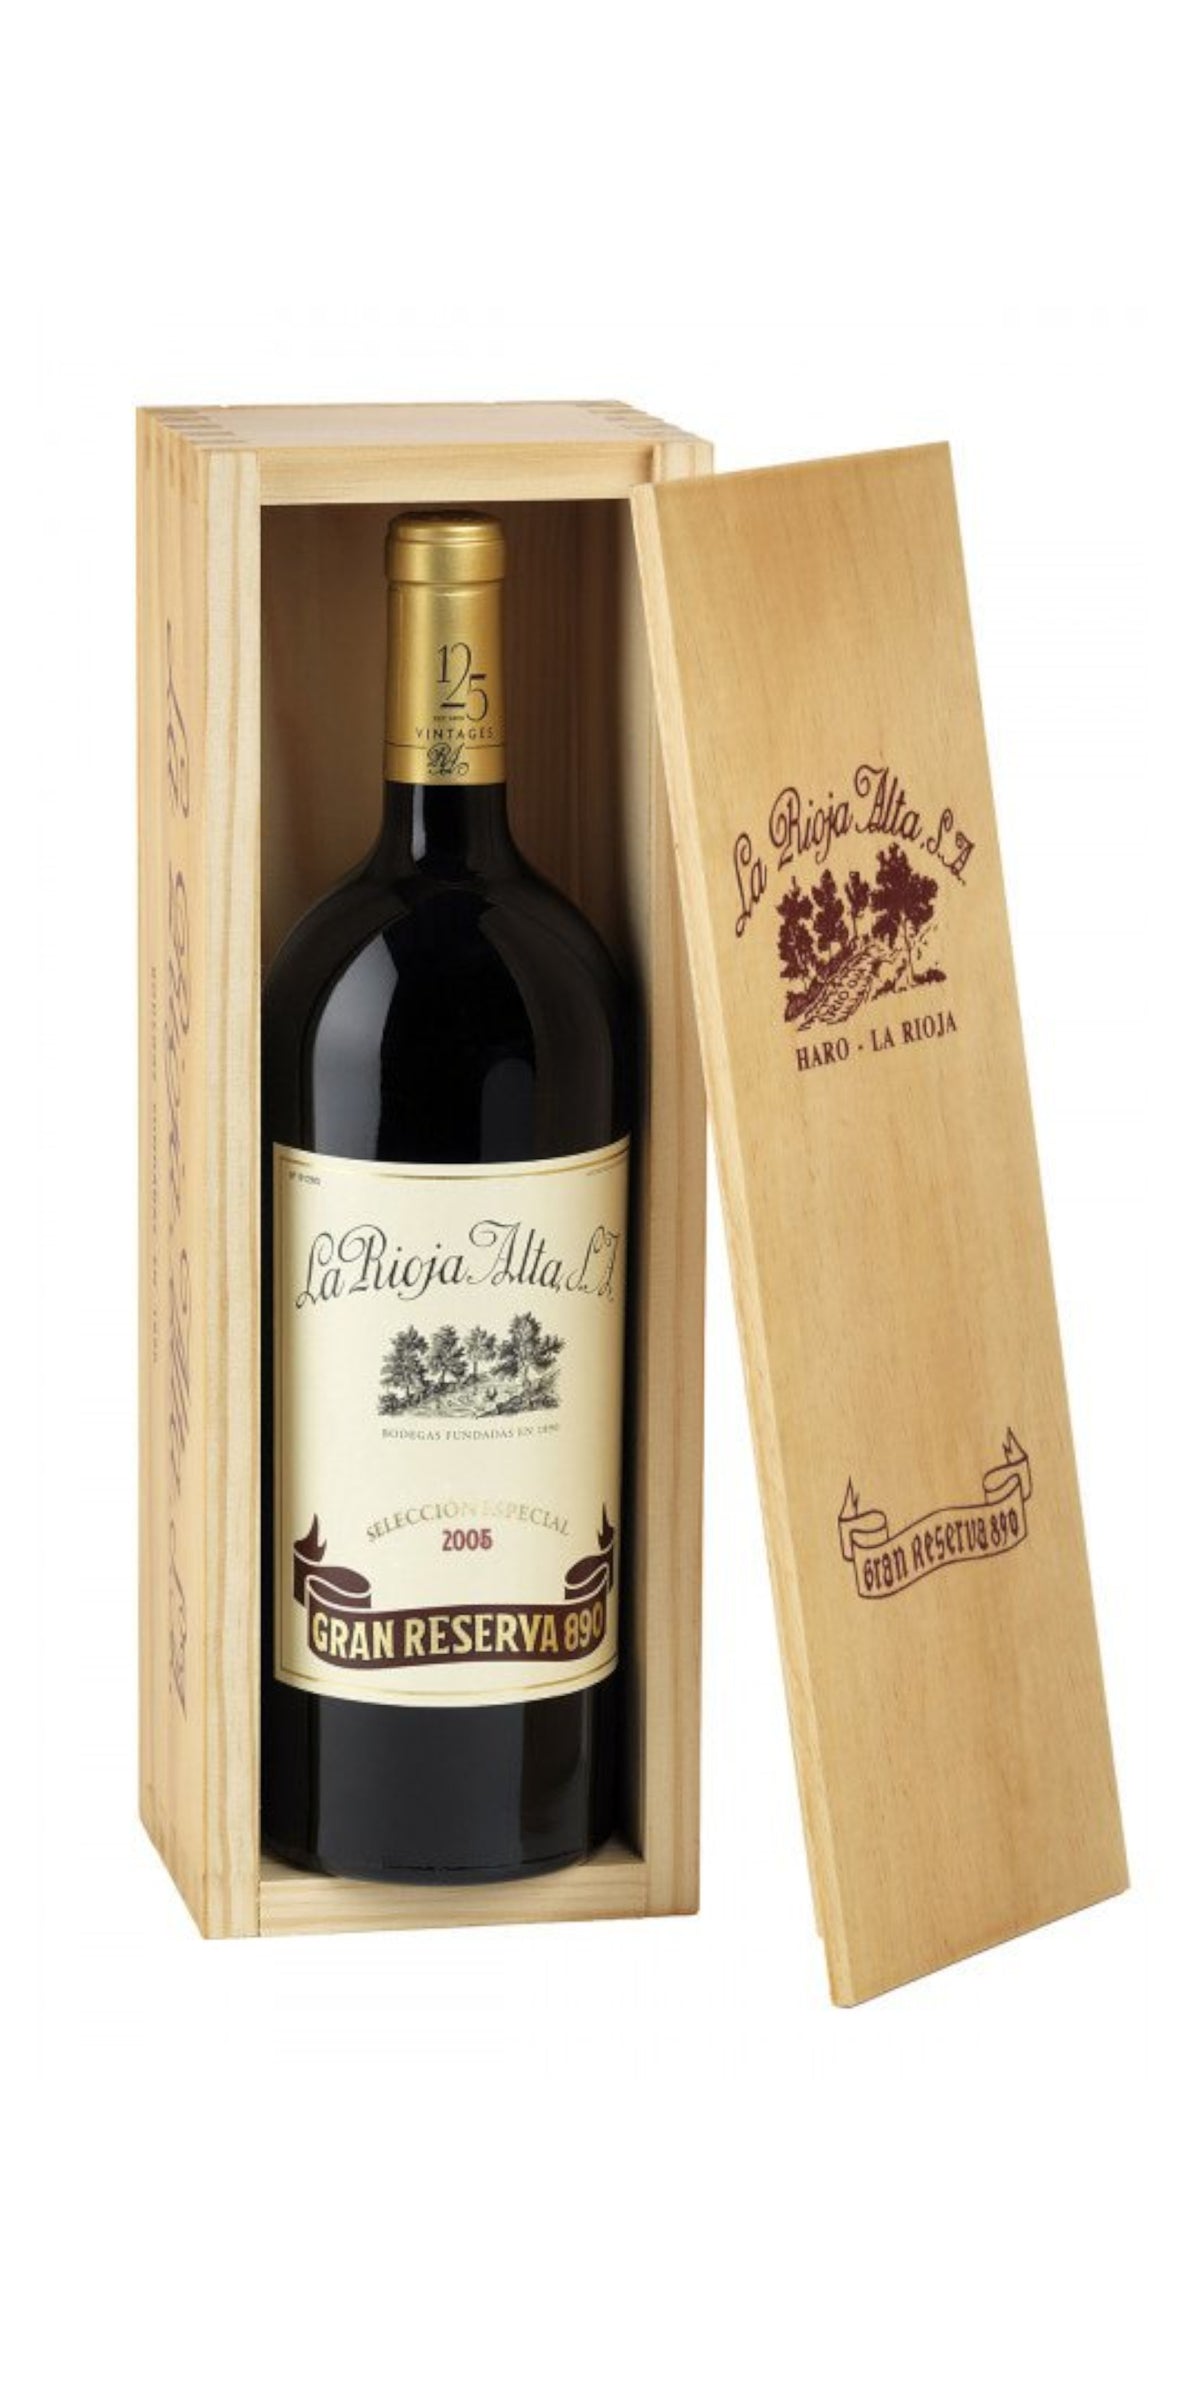 La Rioja Alta, Gran Reserva 890, 2005, 150cl Wooden Case